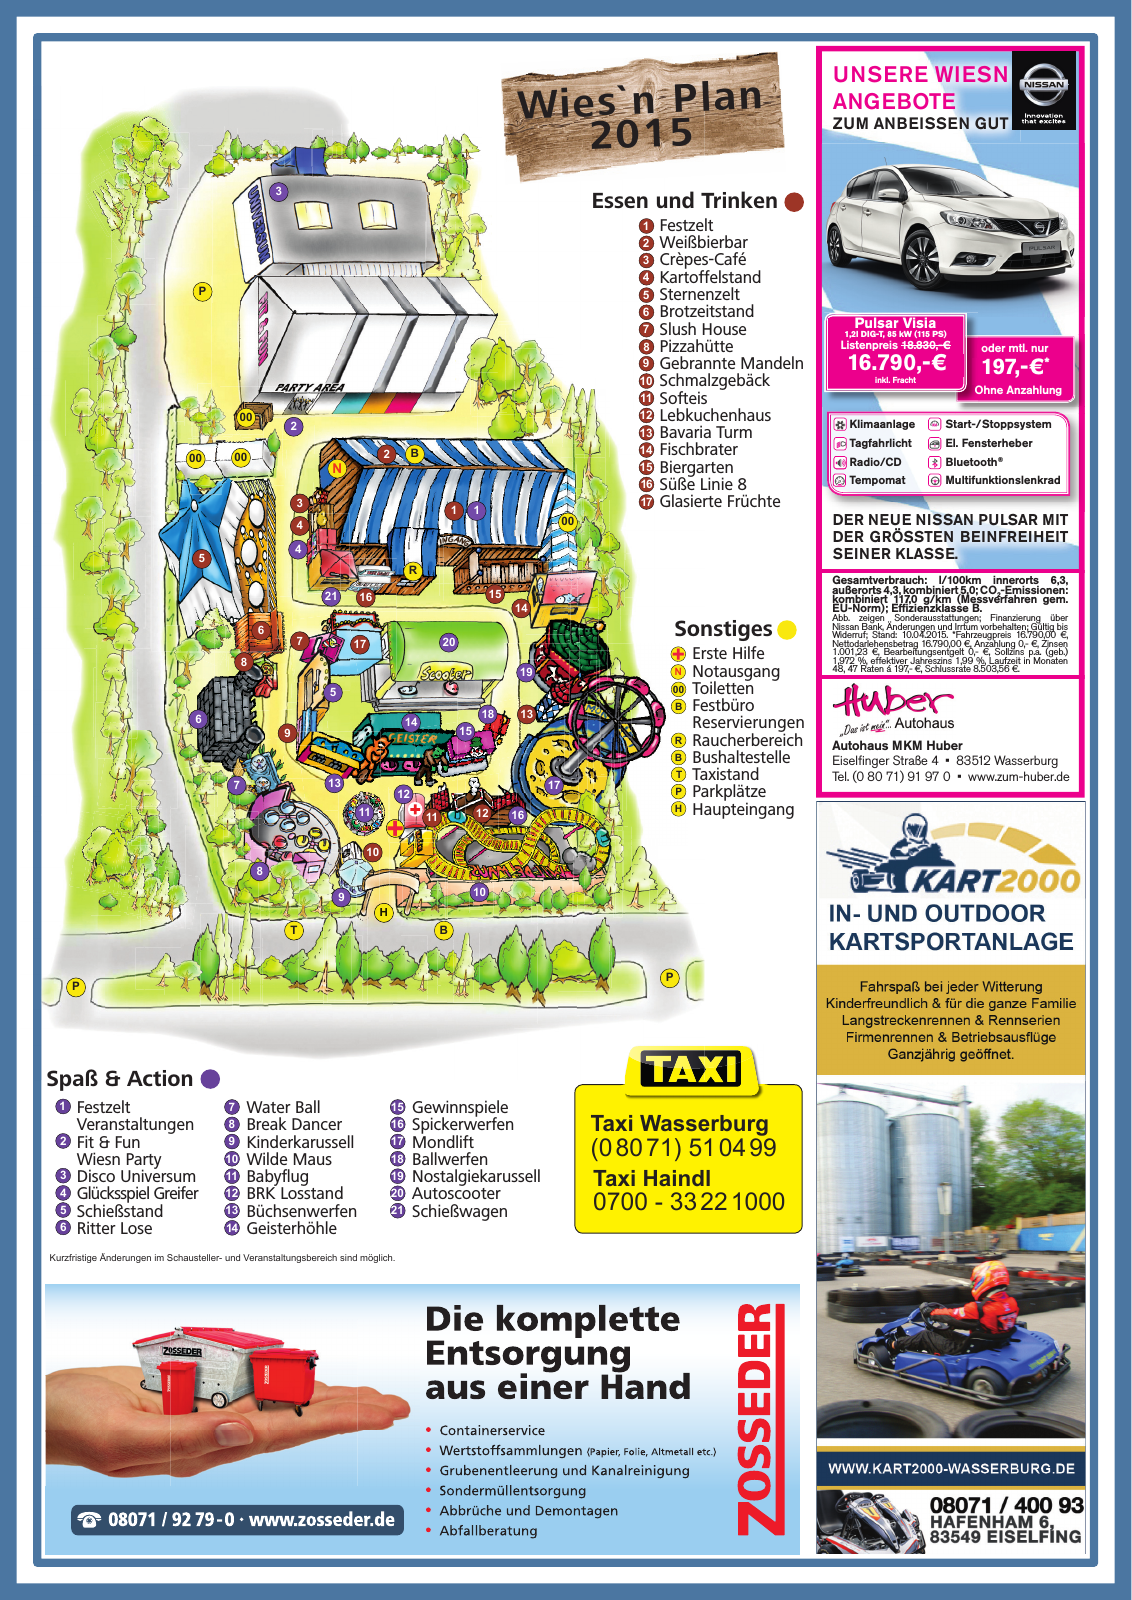 Vorschau Wasserburger Wiesnblattl 2015 Ausgabe 1 Seite 5